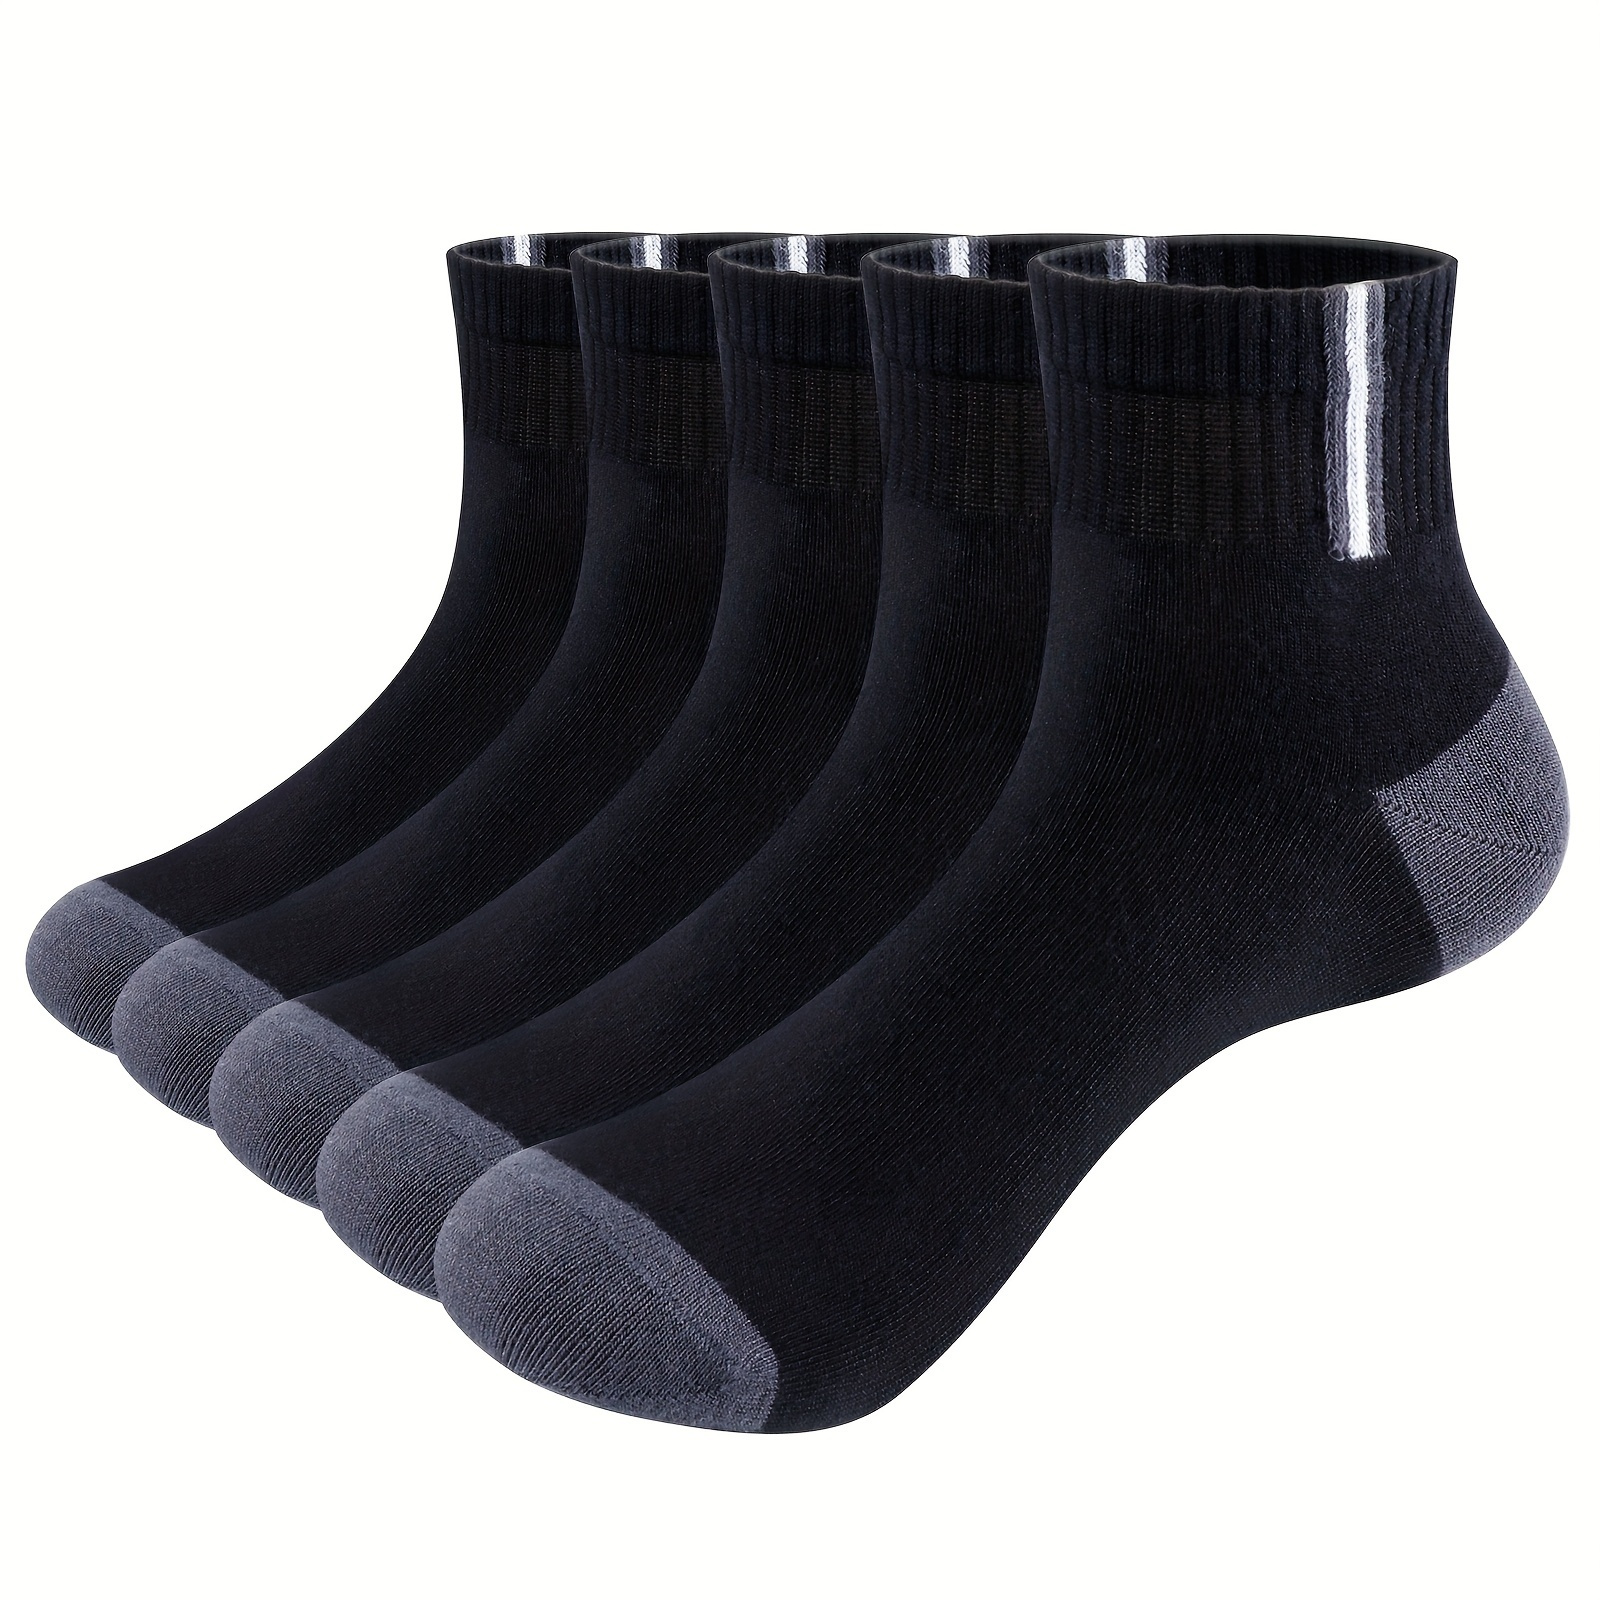 

5pcs Men's Bamboo Breathable Ankle Socks For Summer